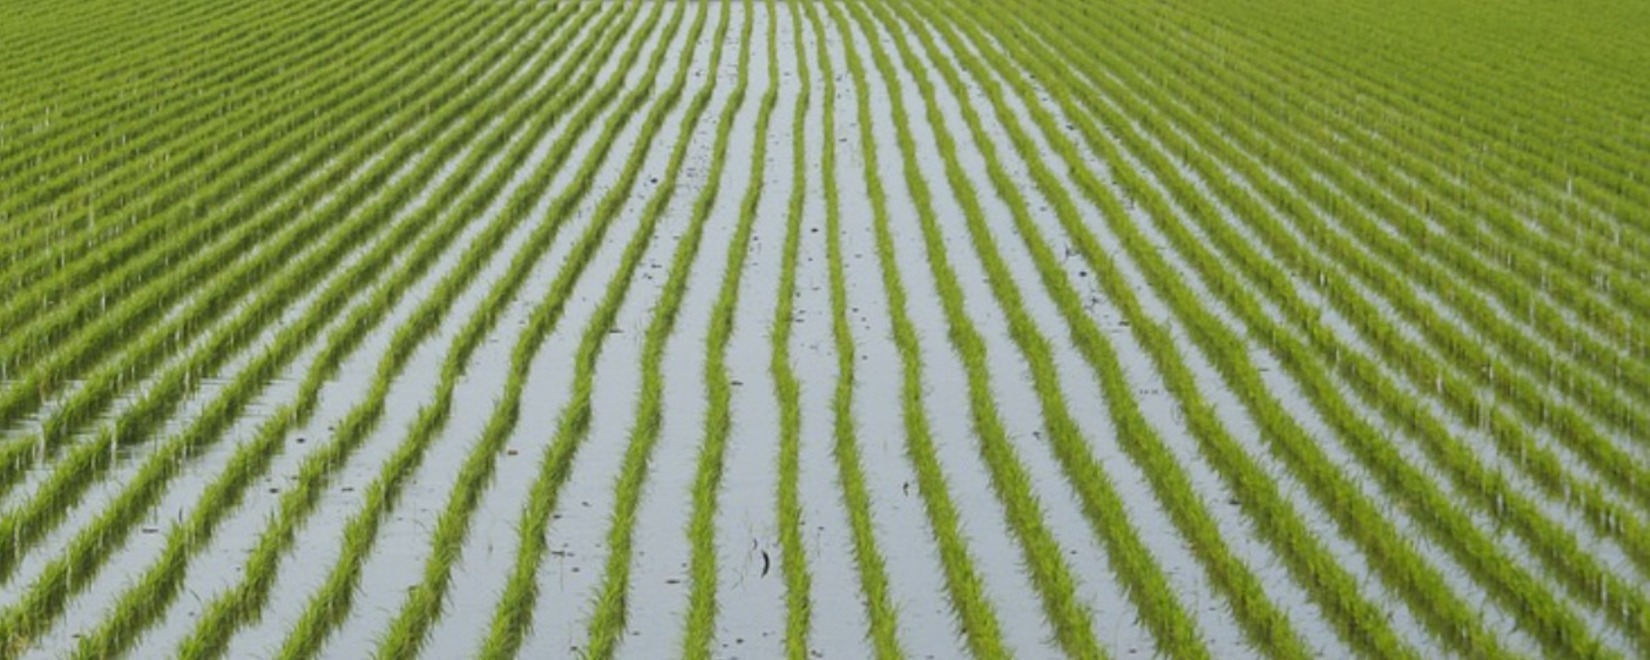 车臣共和国的稻谷产量达到历史最高水平：增长了2.3%，达到8.8万吨。计划扩大种植面积。